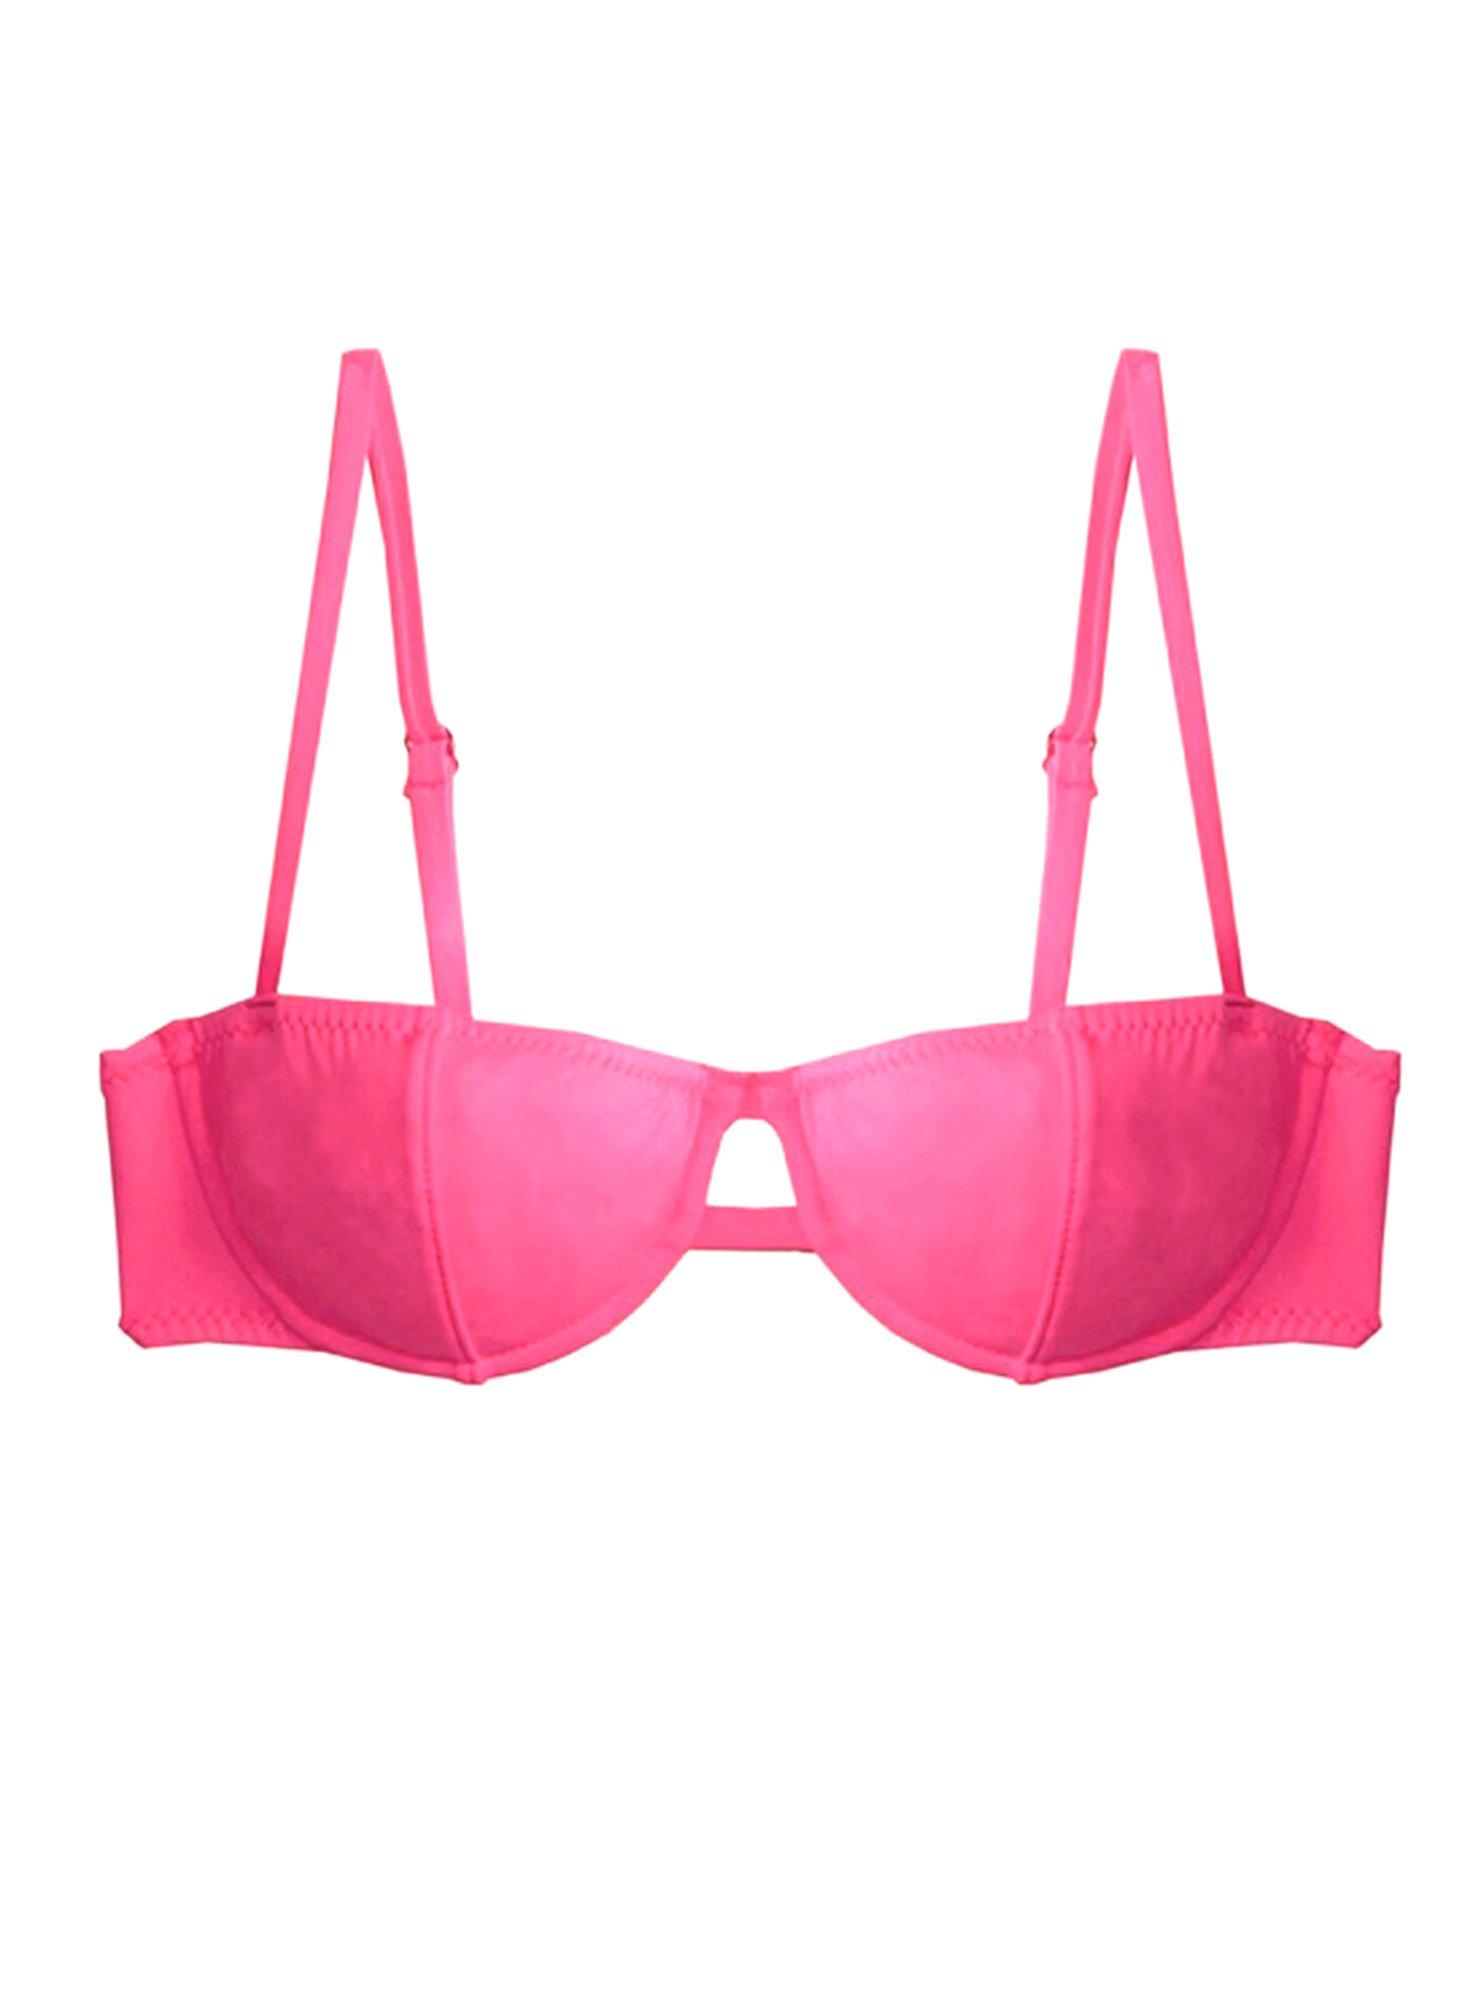 Fleur du Mal Synthetic Balconette Bikini Top in Pink - Lyst